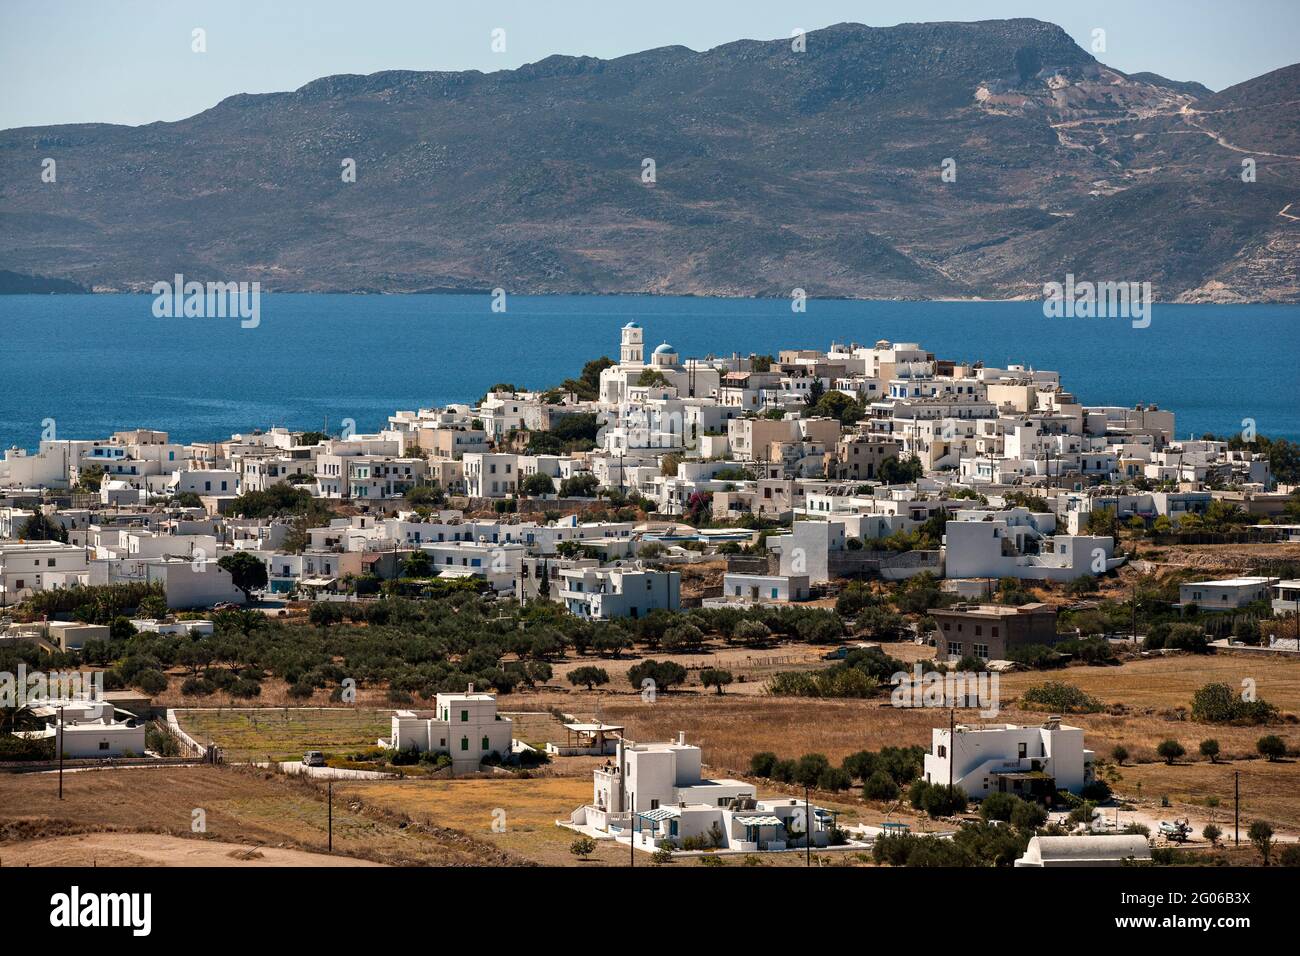 Cityview Adamas village, le port principal de l'île de Milos, Milos, Cyclades, Grèce, Europe Banque D'Images